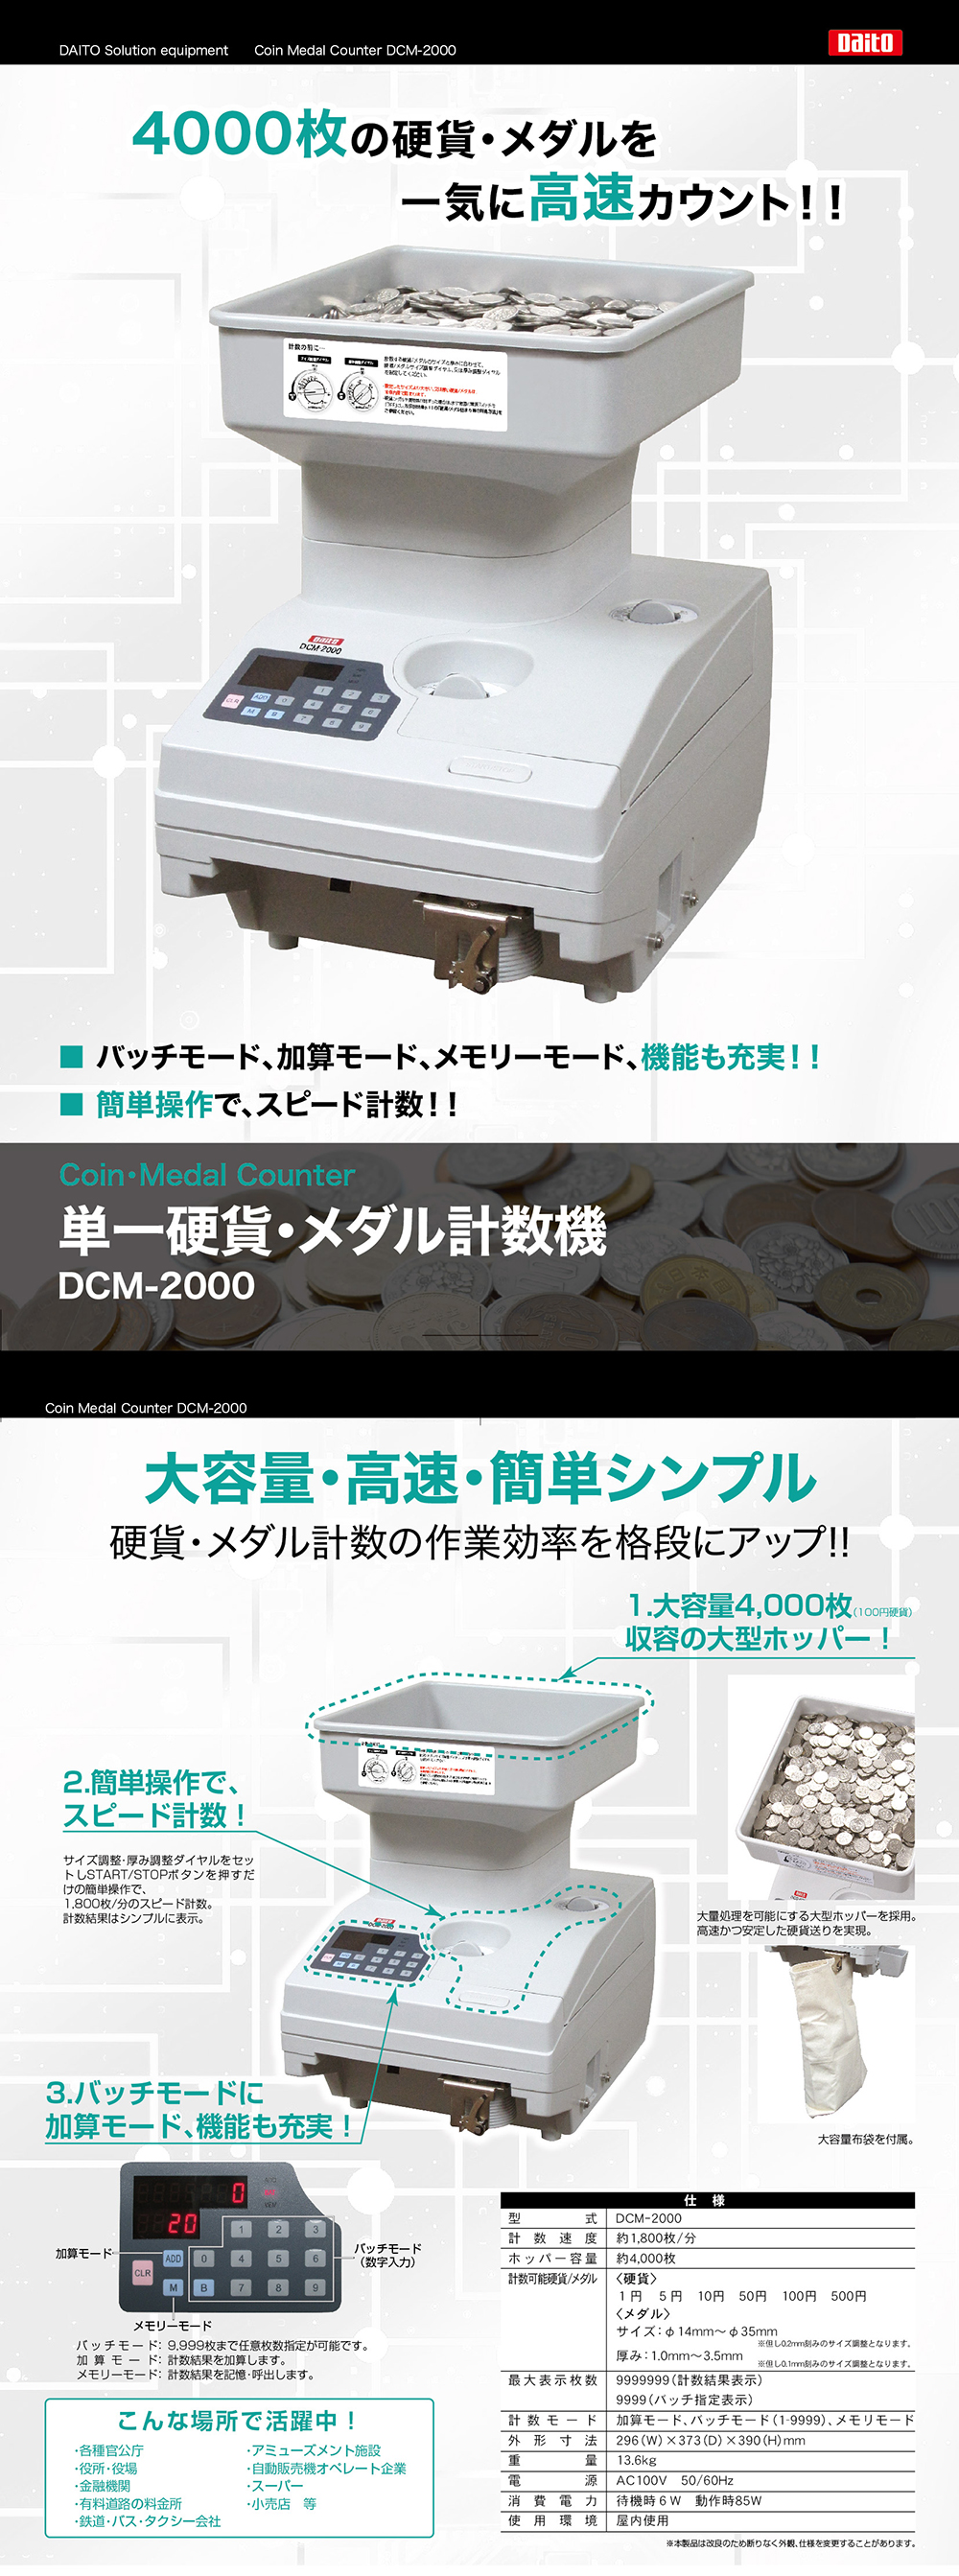 単一硬貨・メダル計数機 DCM-2000 | 株式会社ダイト